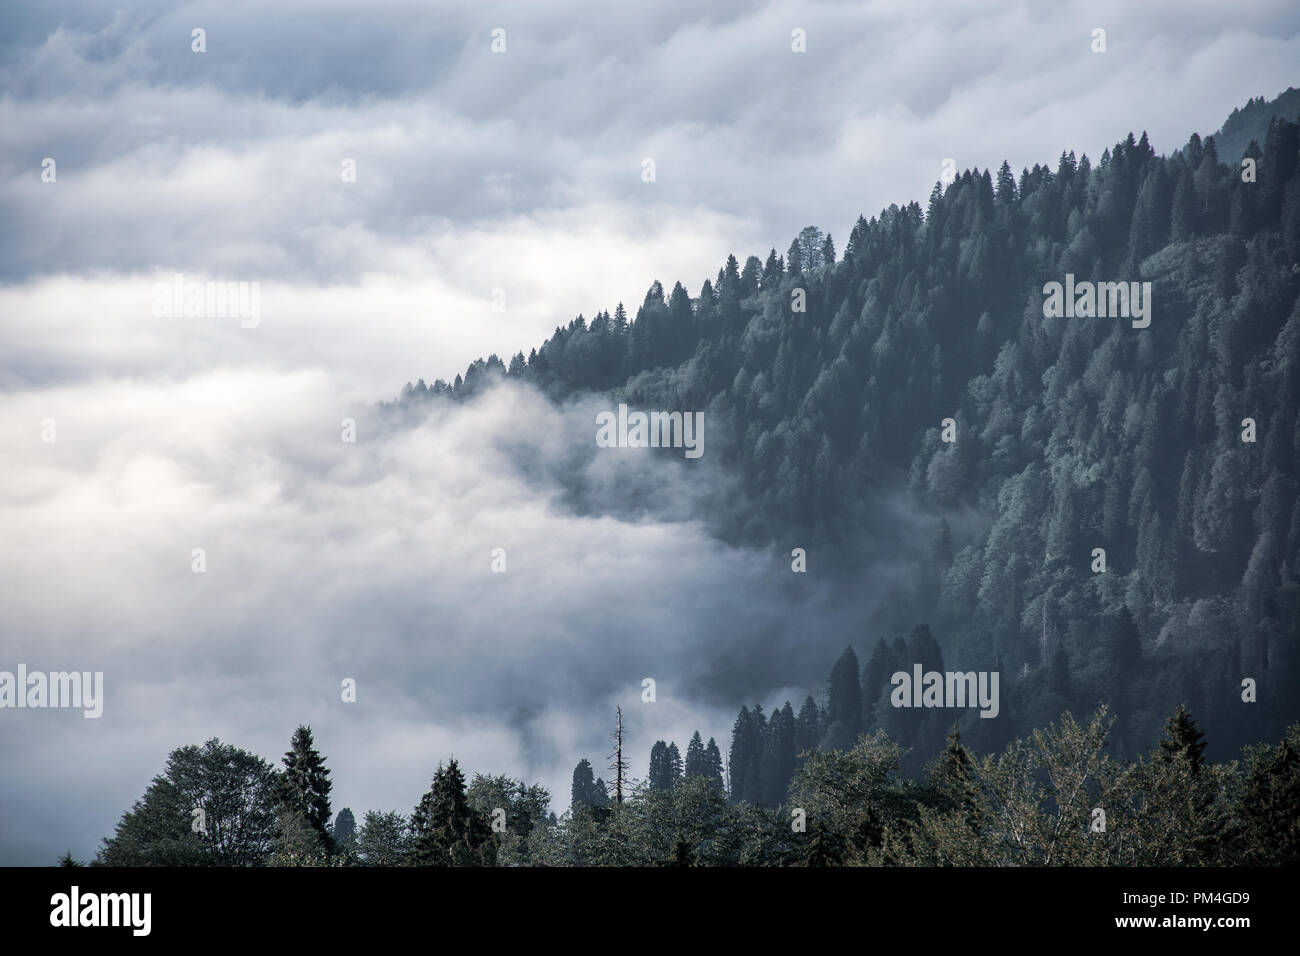 Incredibile vista aerea del freddo misty mountains.Cloud e il paesaggio forestale. Foto Stock